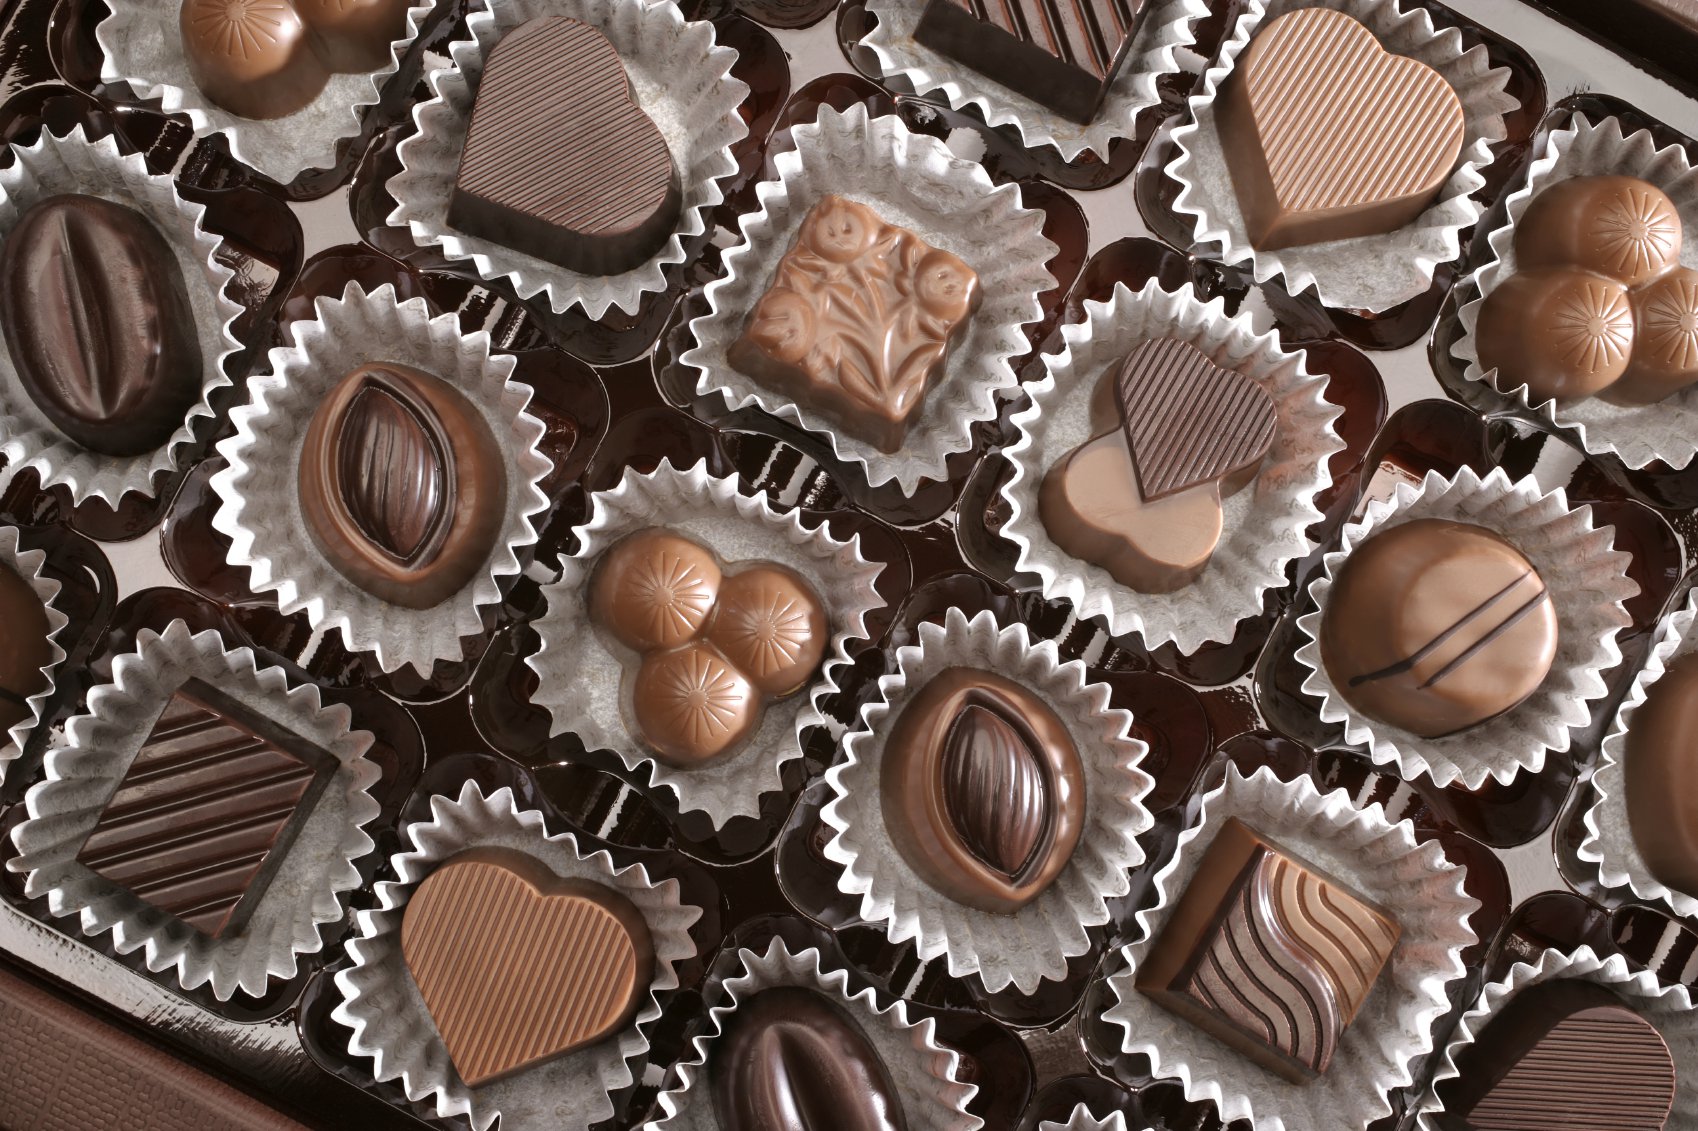 Шоколадный ассортимент. Шоколад. Много шоколада и конфет. Сладкое фото. Шоколадка из разного шоколада.